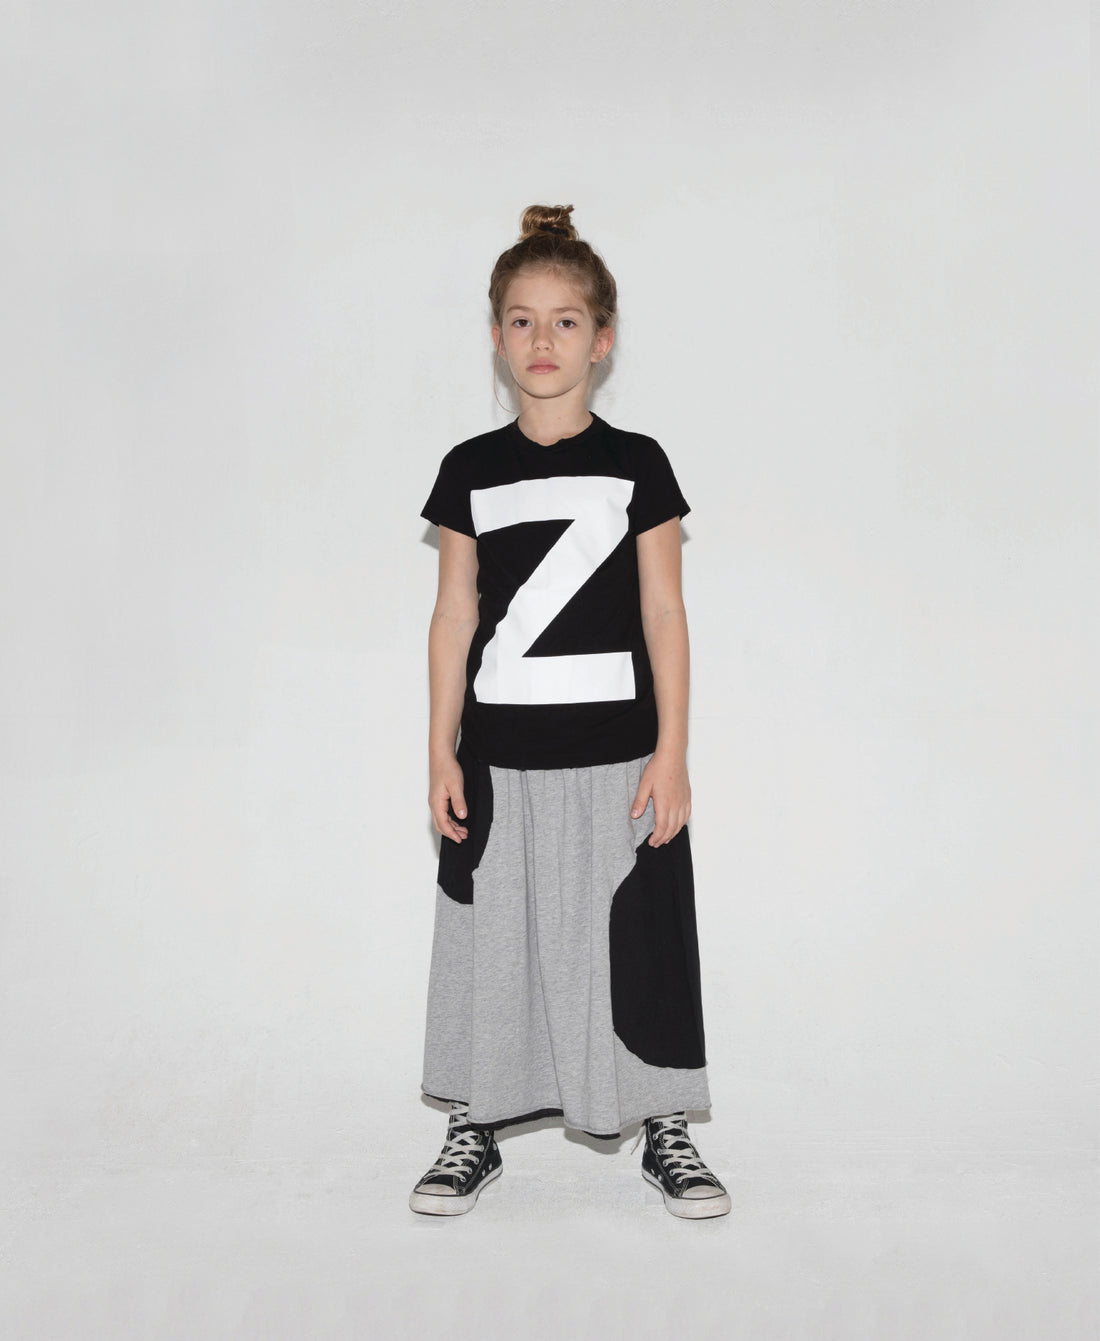 NUNUNU Black "Z" T-shirt